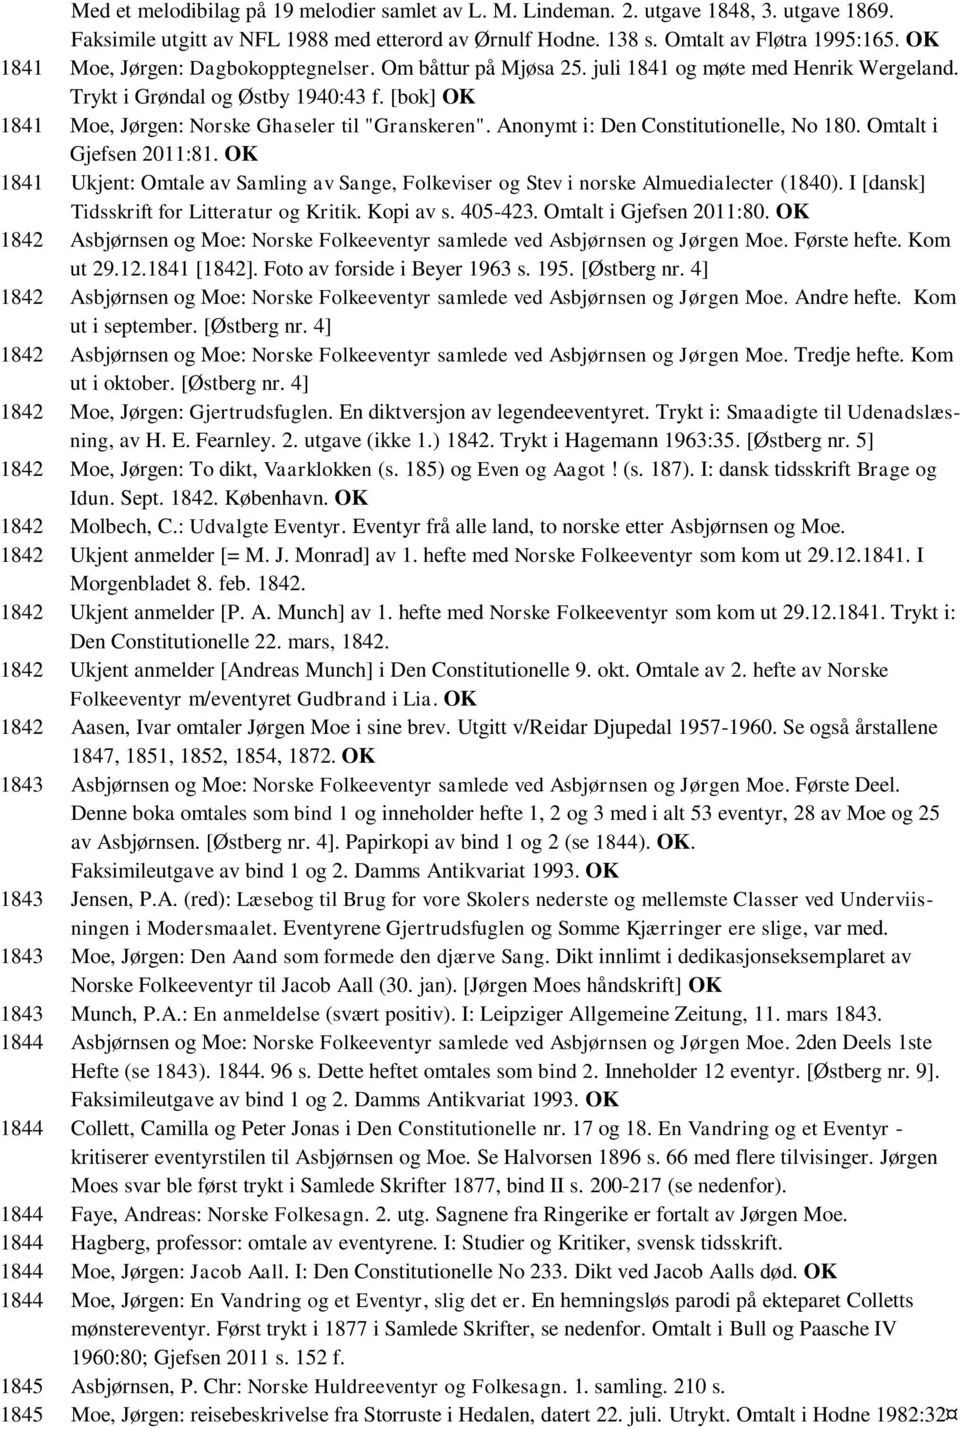 Anonymt i: Den Constitutionelle, No 180. Omtalt i Gjefsen 2011:81. OK 1841 Ukjent: Omtale av Samling av Sange, Folkeviser og Stev i norske Almuedialecter (1840).